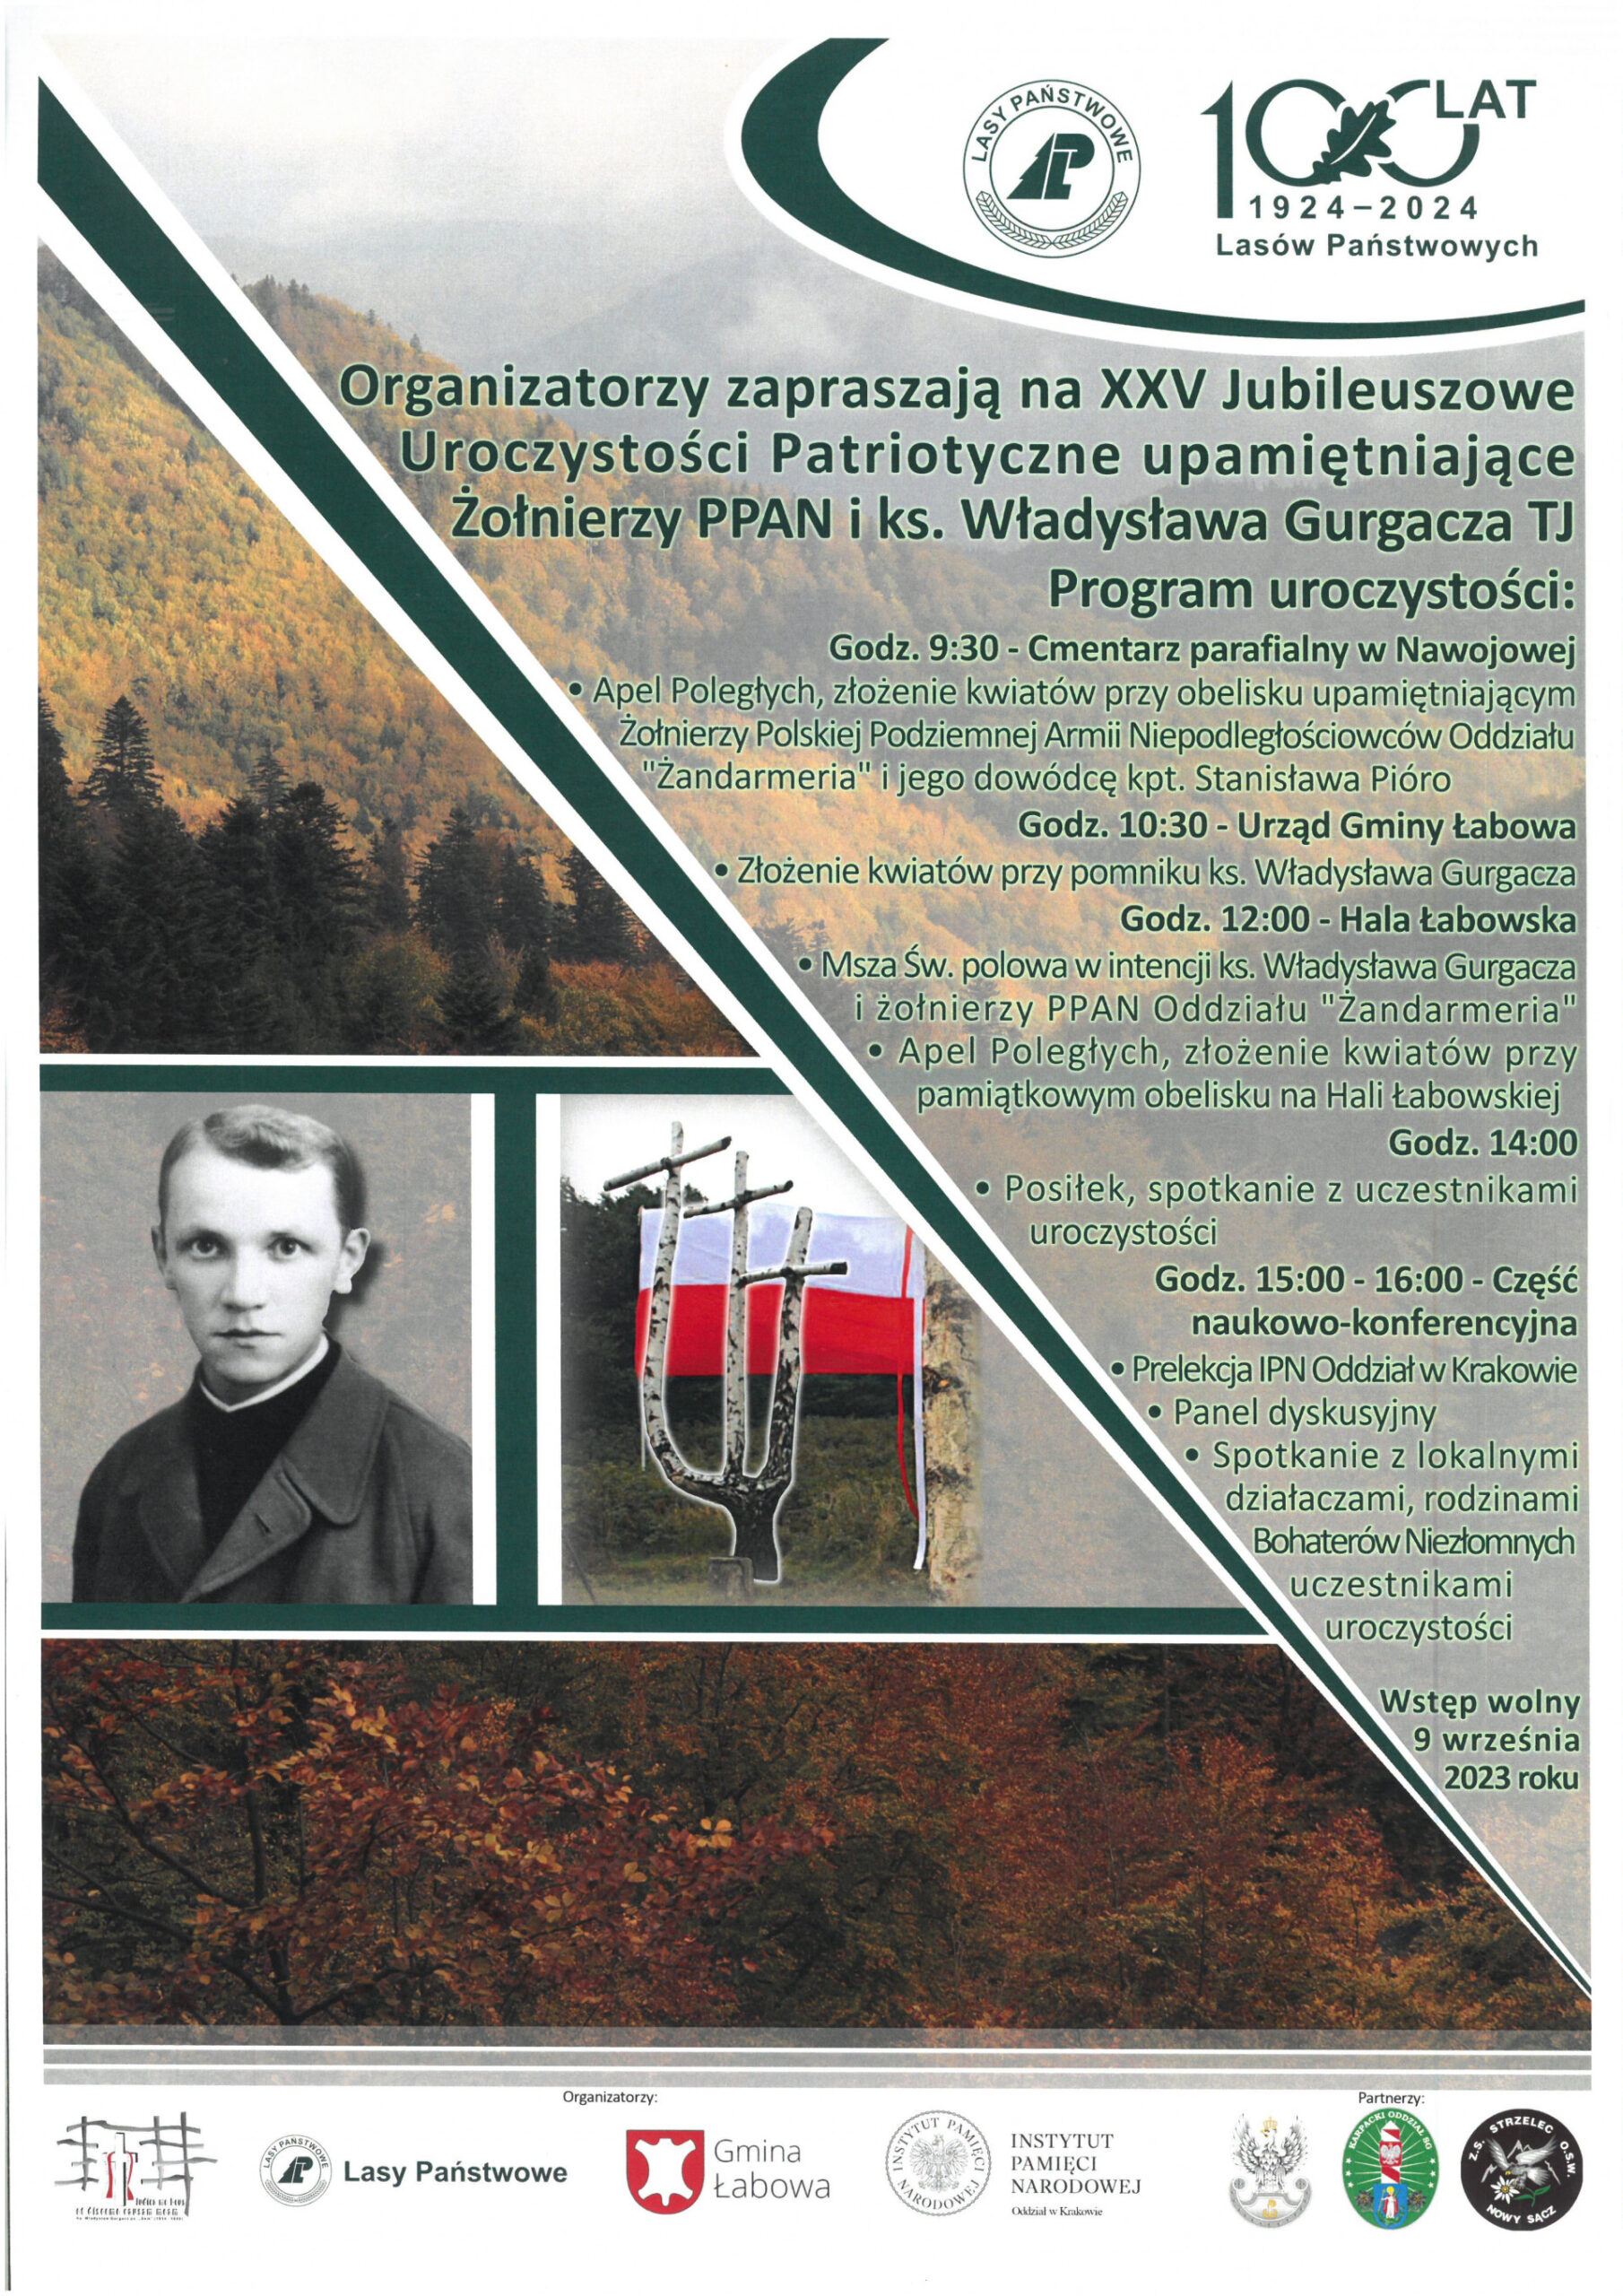 [Łabowa]: XXV Jubileuszowe Uroczystości Patriotyczne upamiętniające Żołnierzy PANN i ks. Władysława Gurgacza